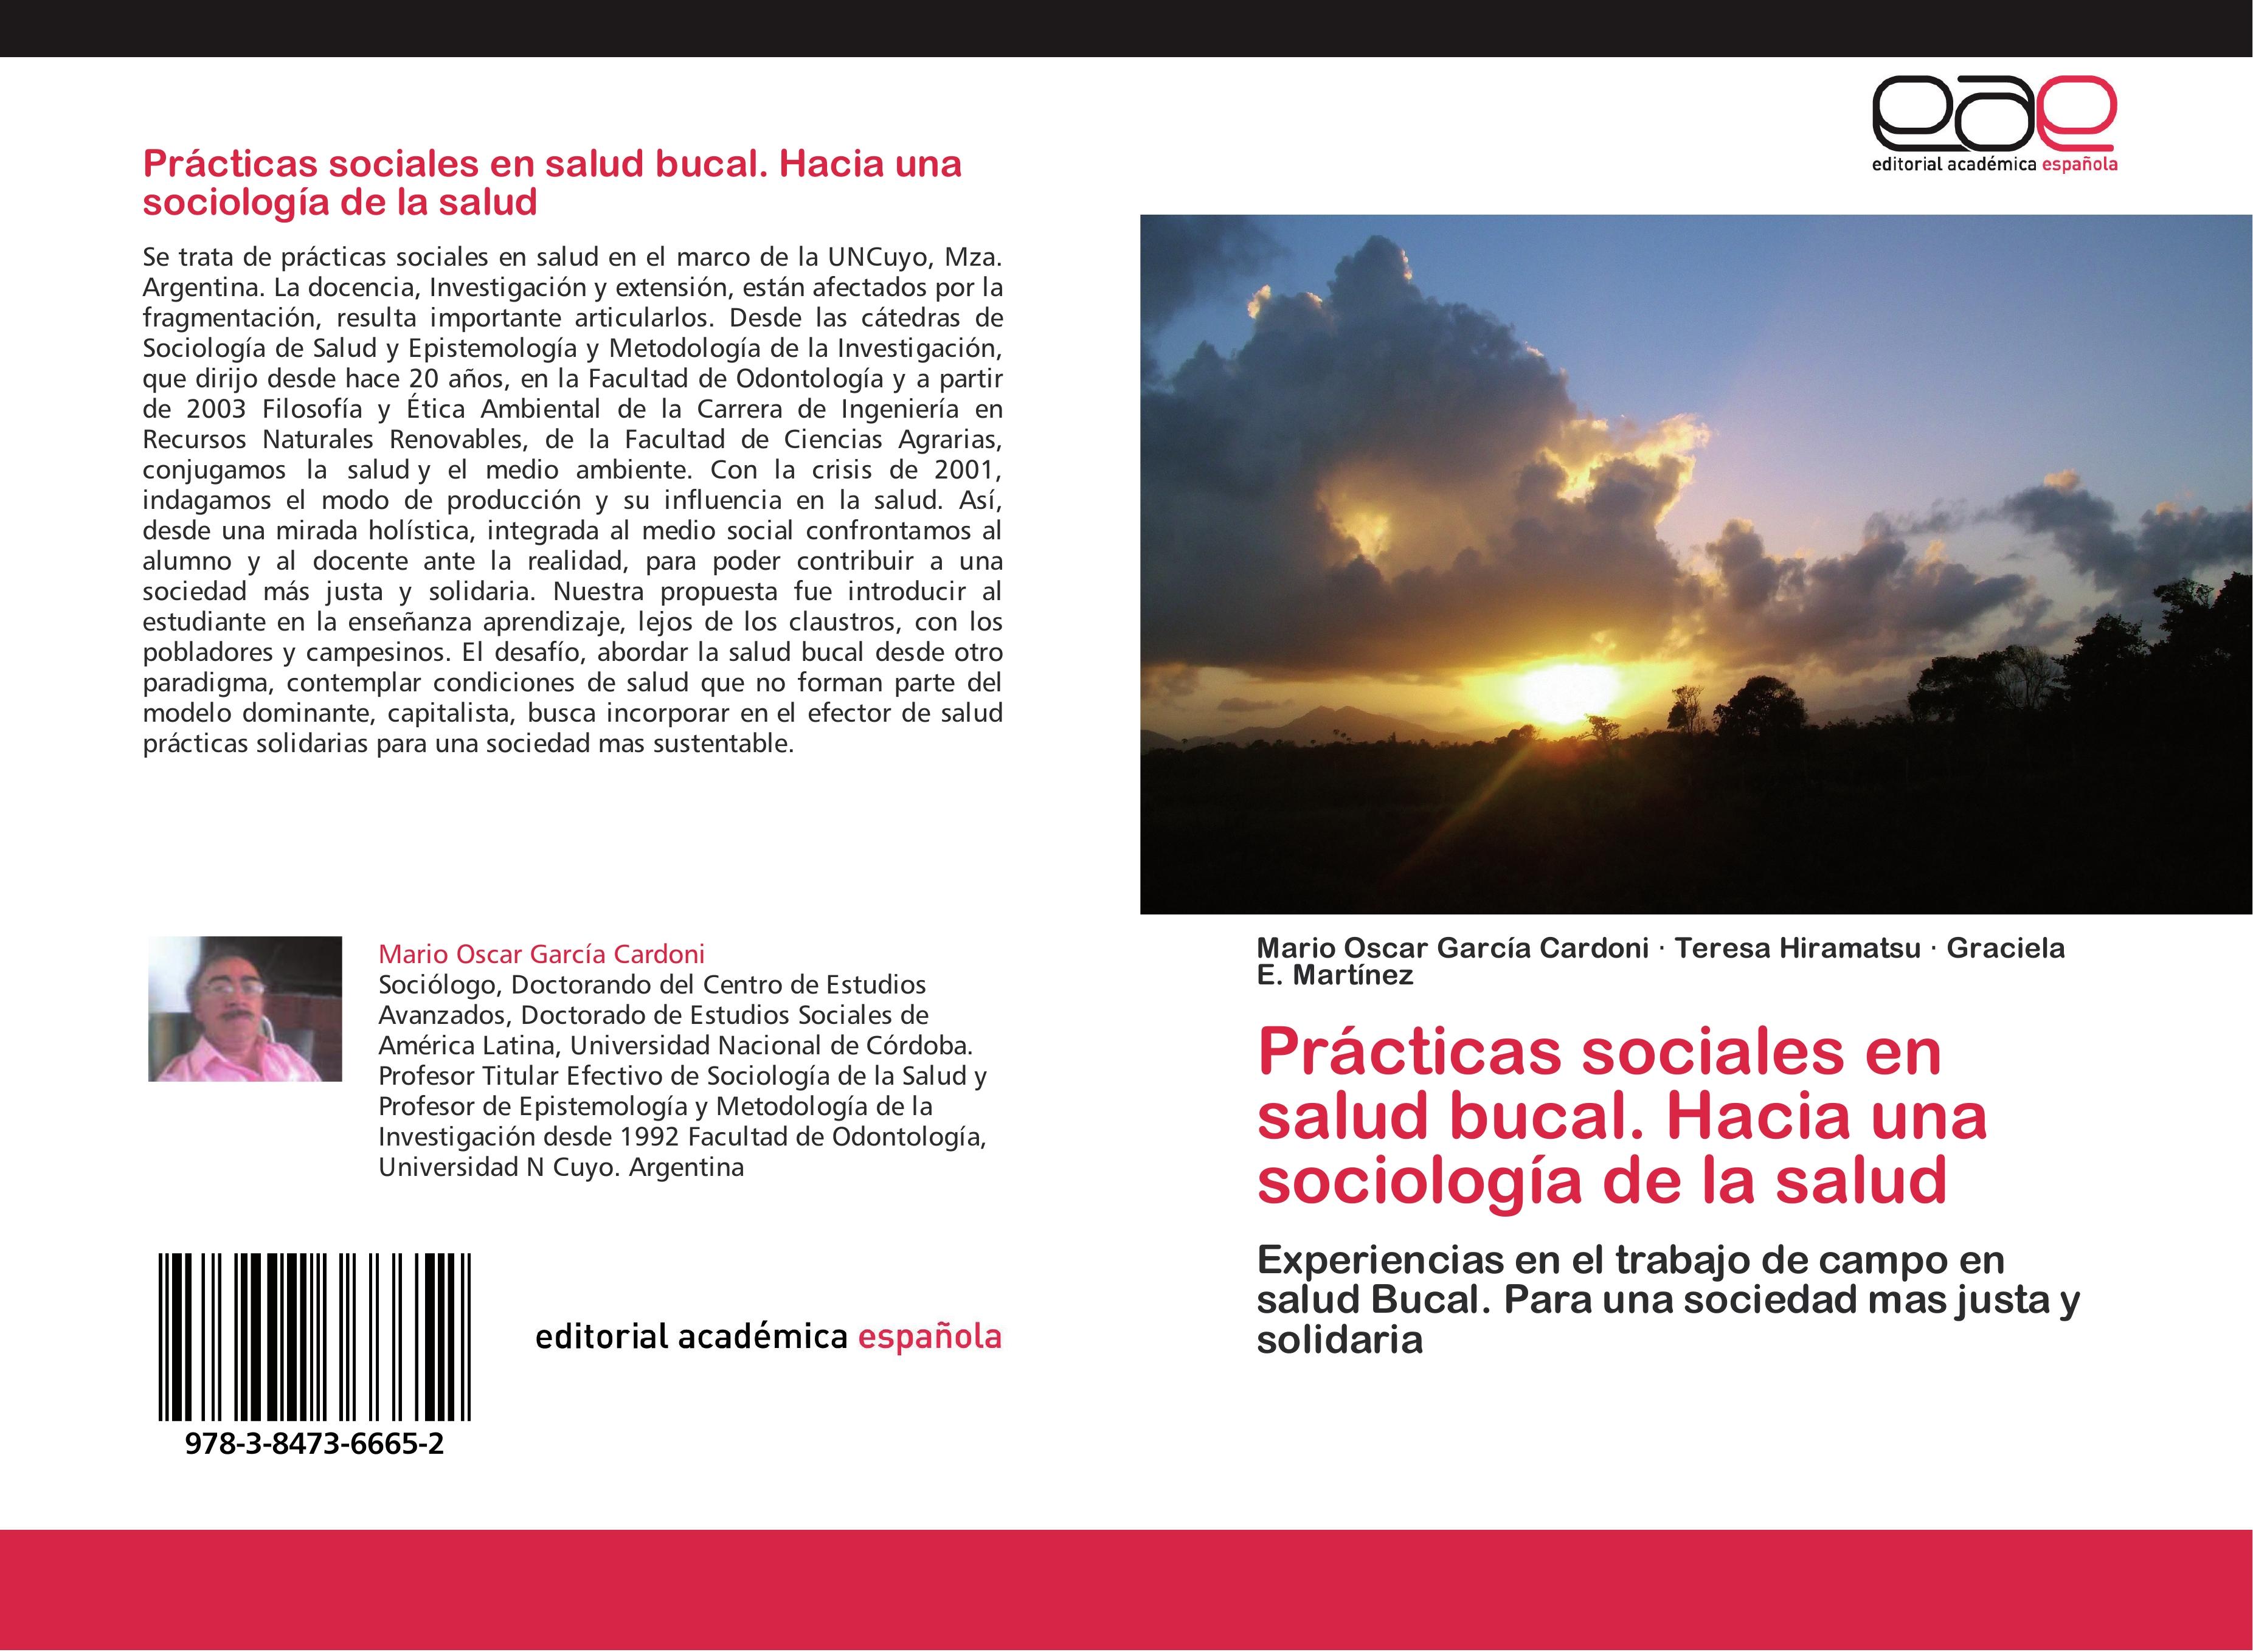 Prácticas sociales en salud bucal. Hacia una sociología de la salud - Mario Oscar García Cardoni Teresa Hiramatsu Graciela E. Martínez